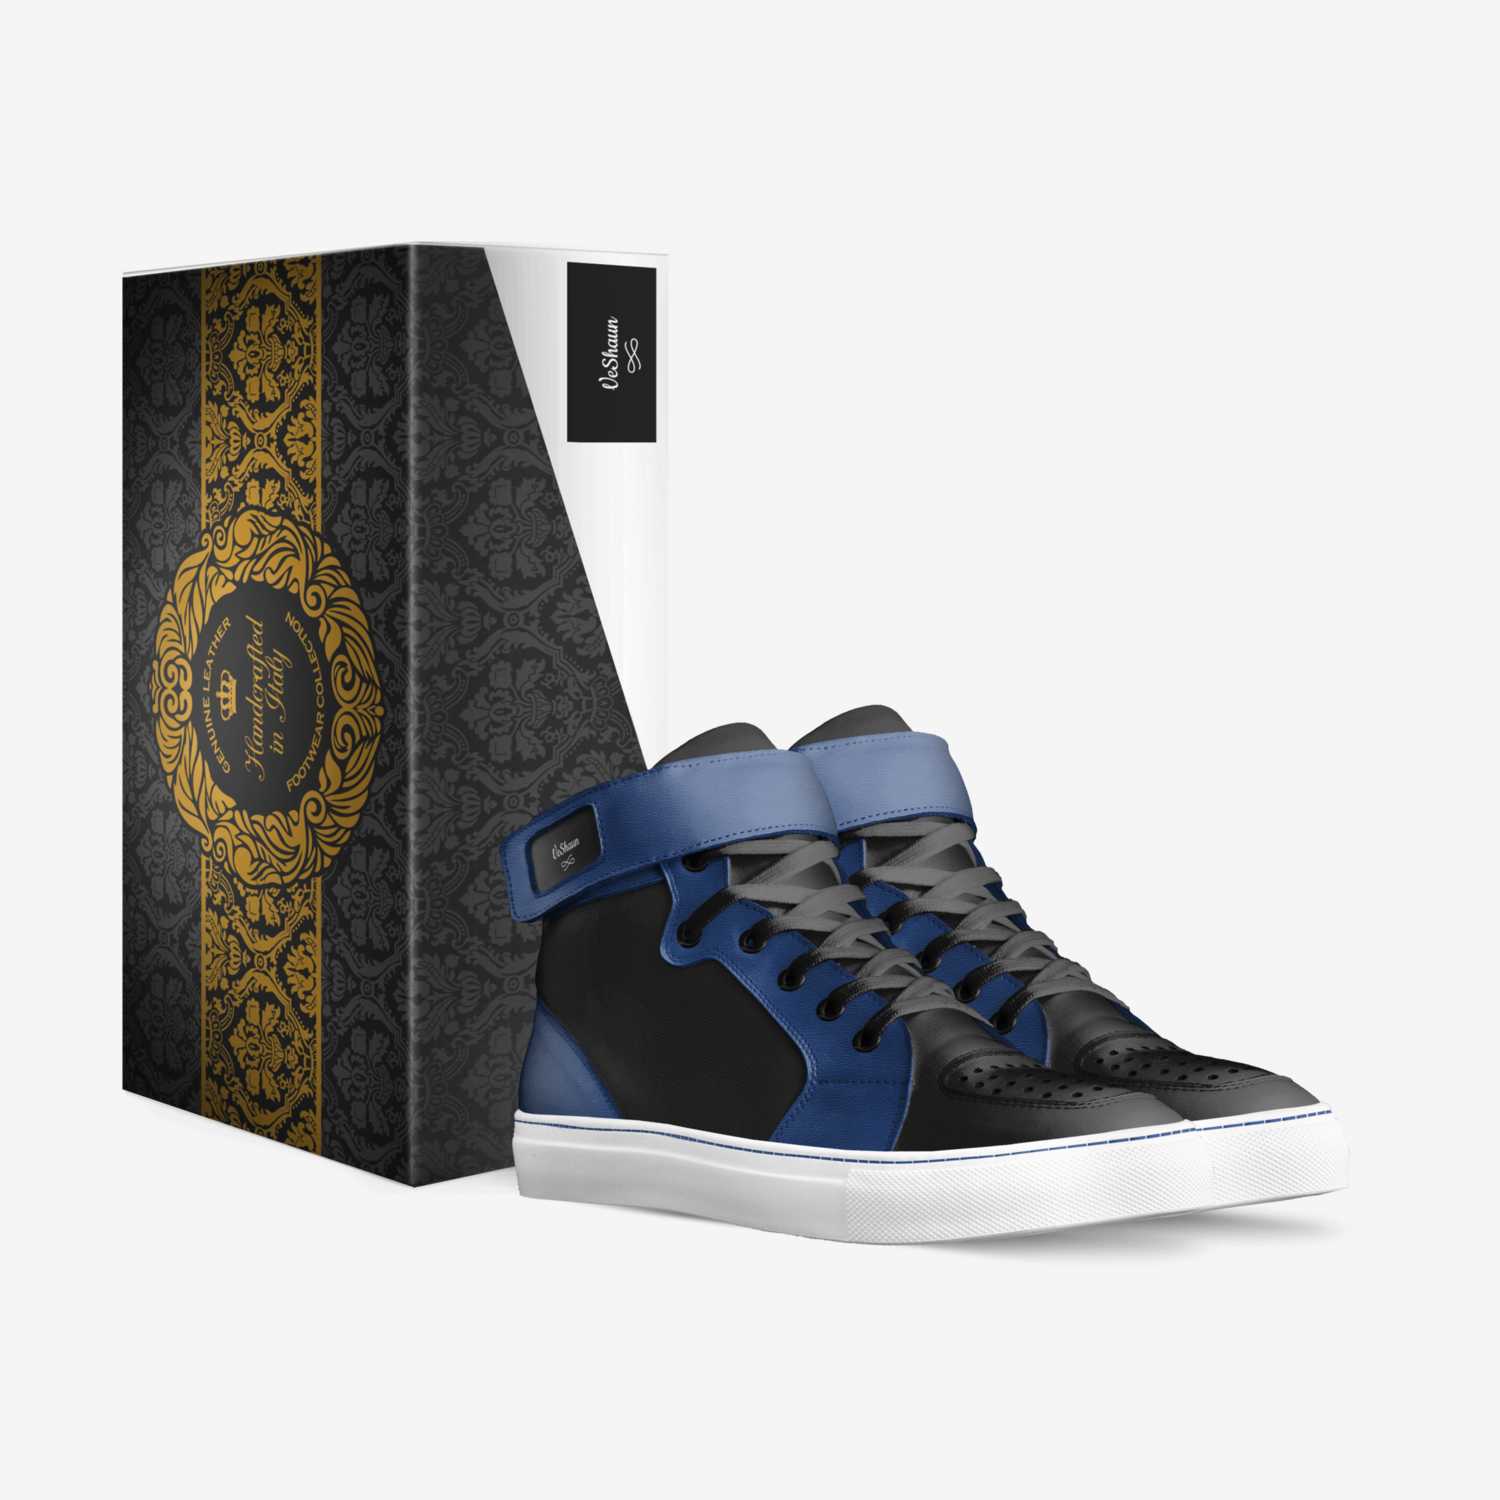 VeShaun custom made in Italy shoes by Ayrehaud Jones | Box view